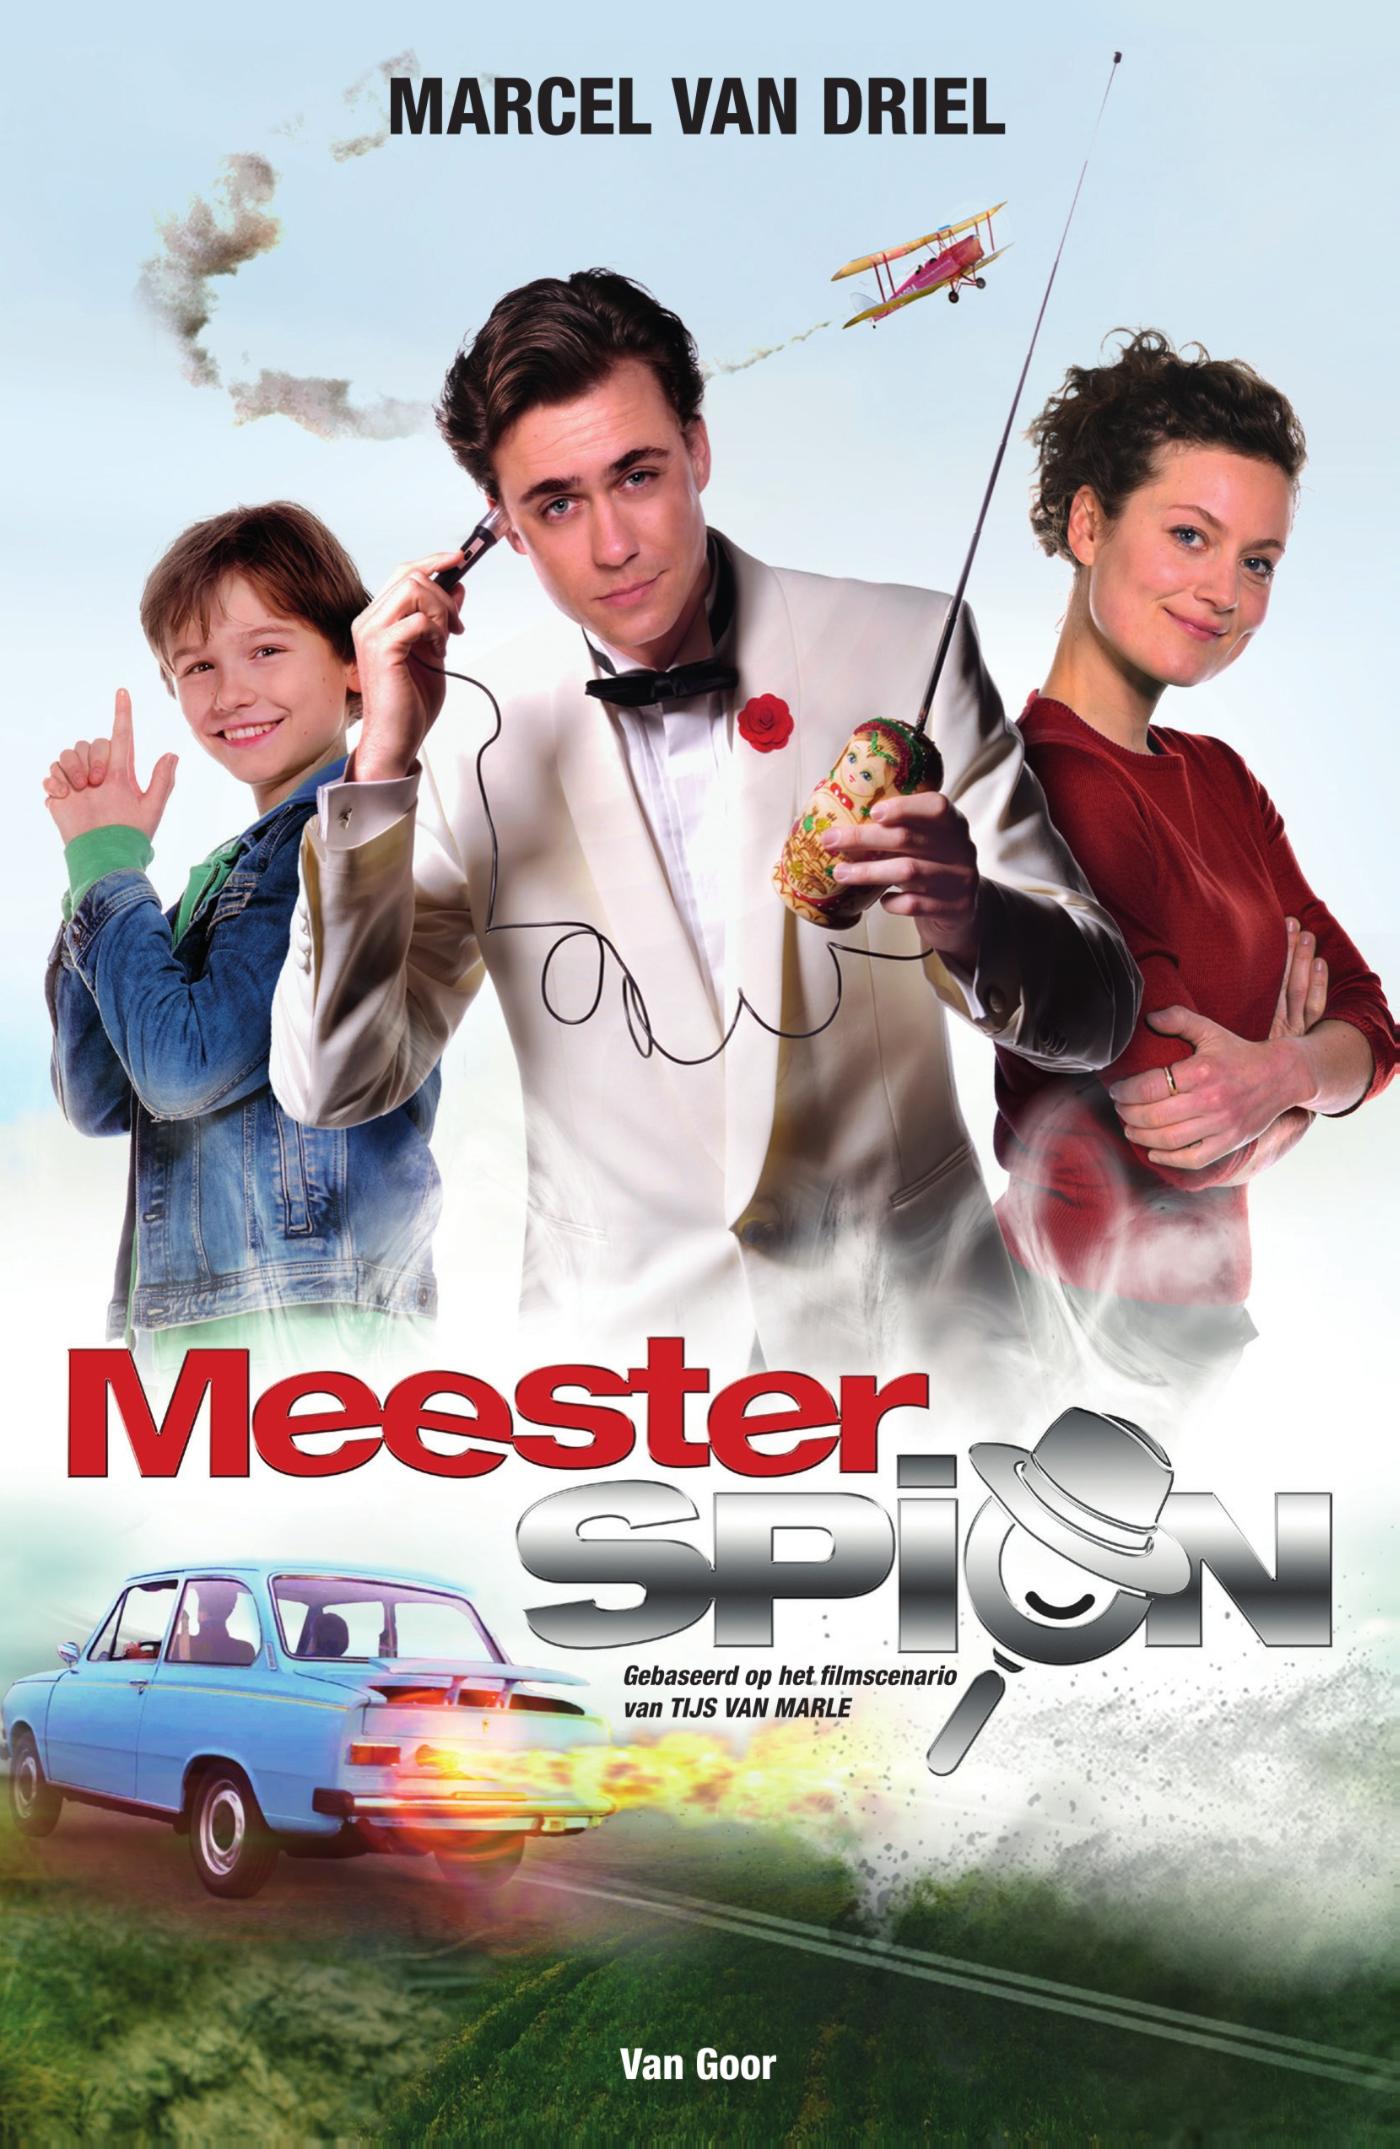 Meesterspion (Ebook)